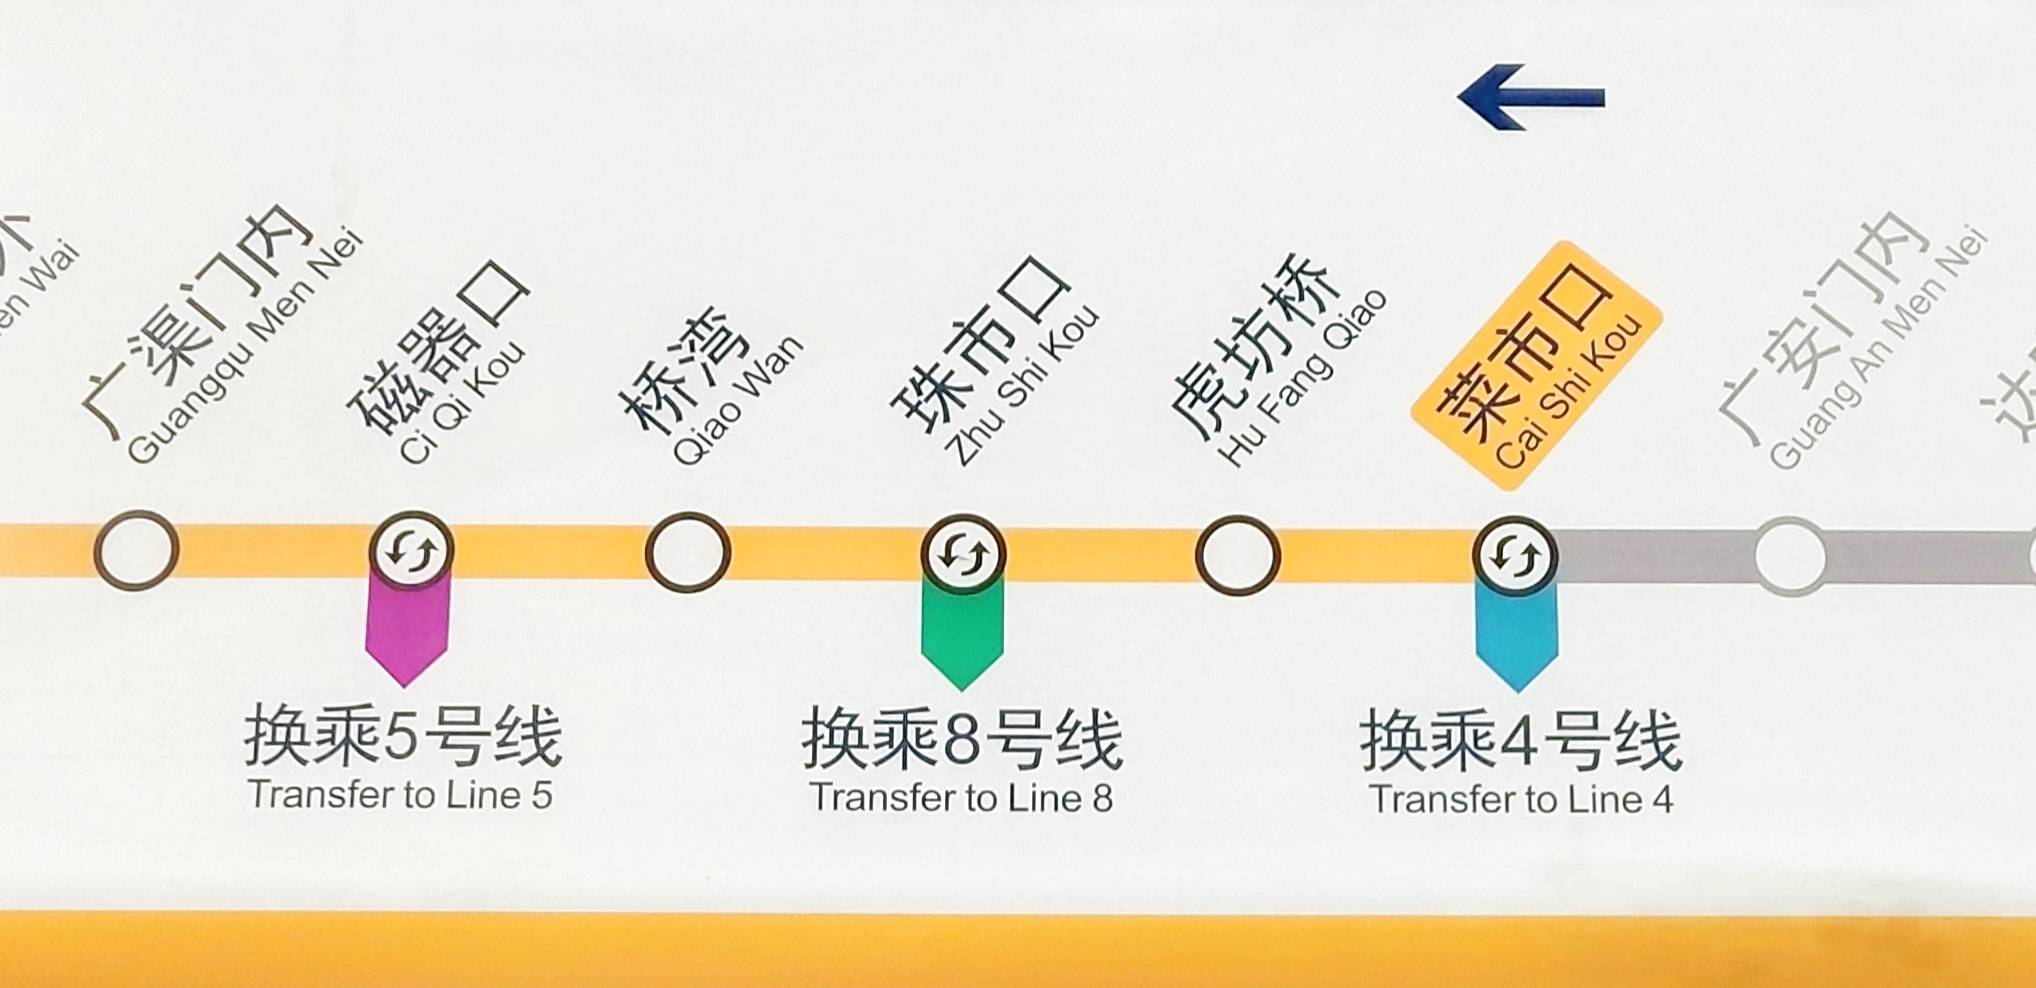 青岛地铁7号线线路图图片